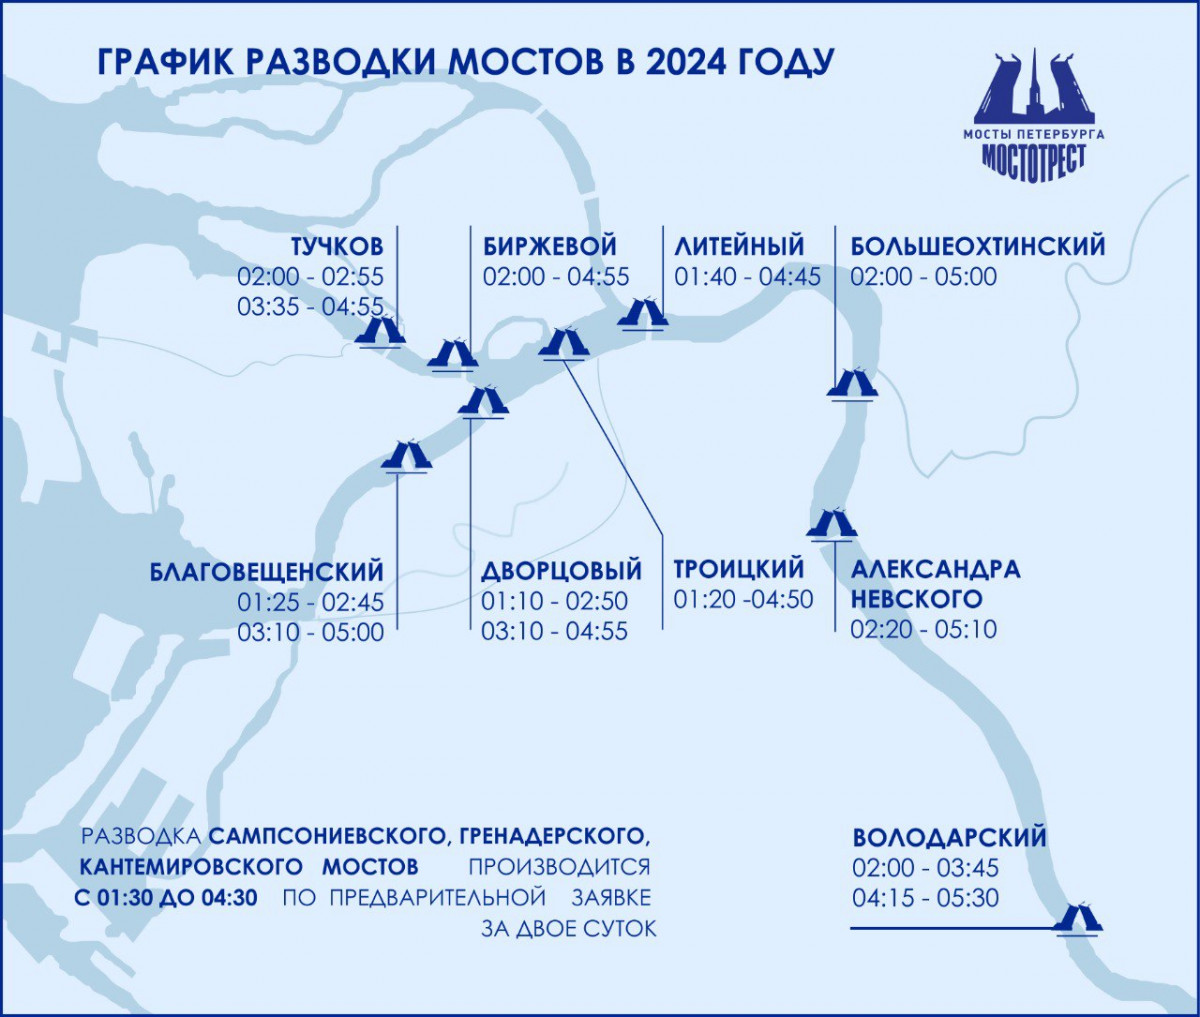 Расписание разводки мостов в Петербурге 2024